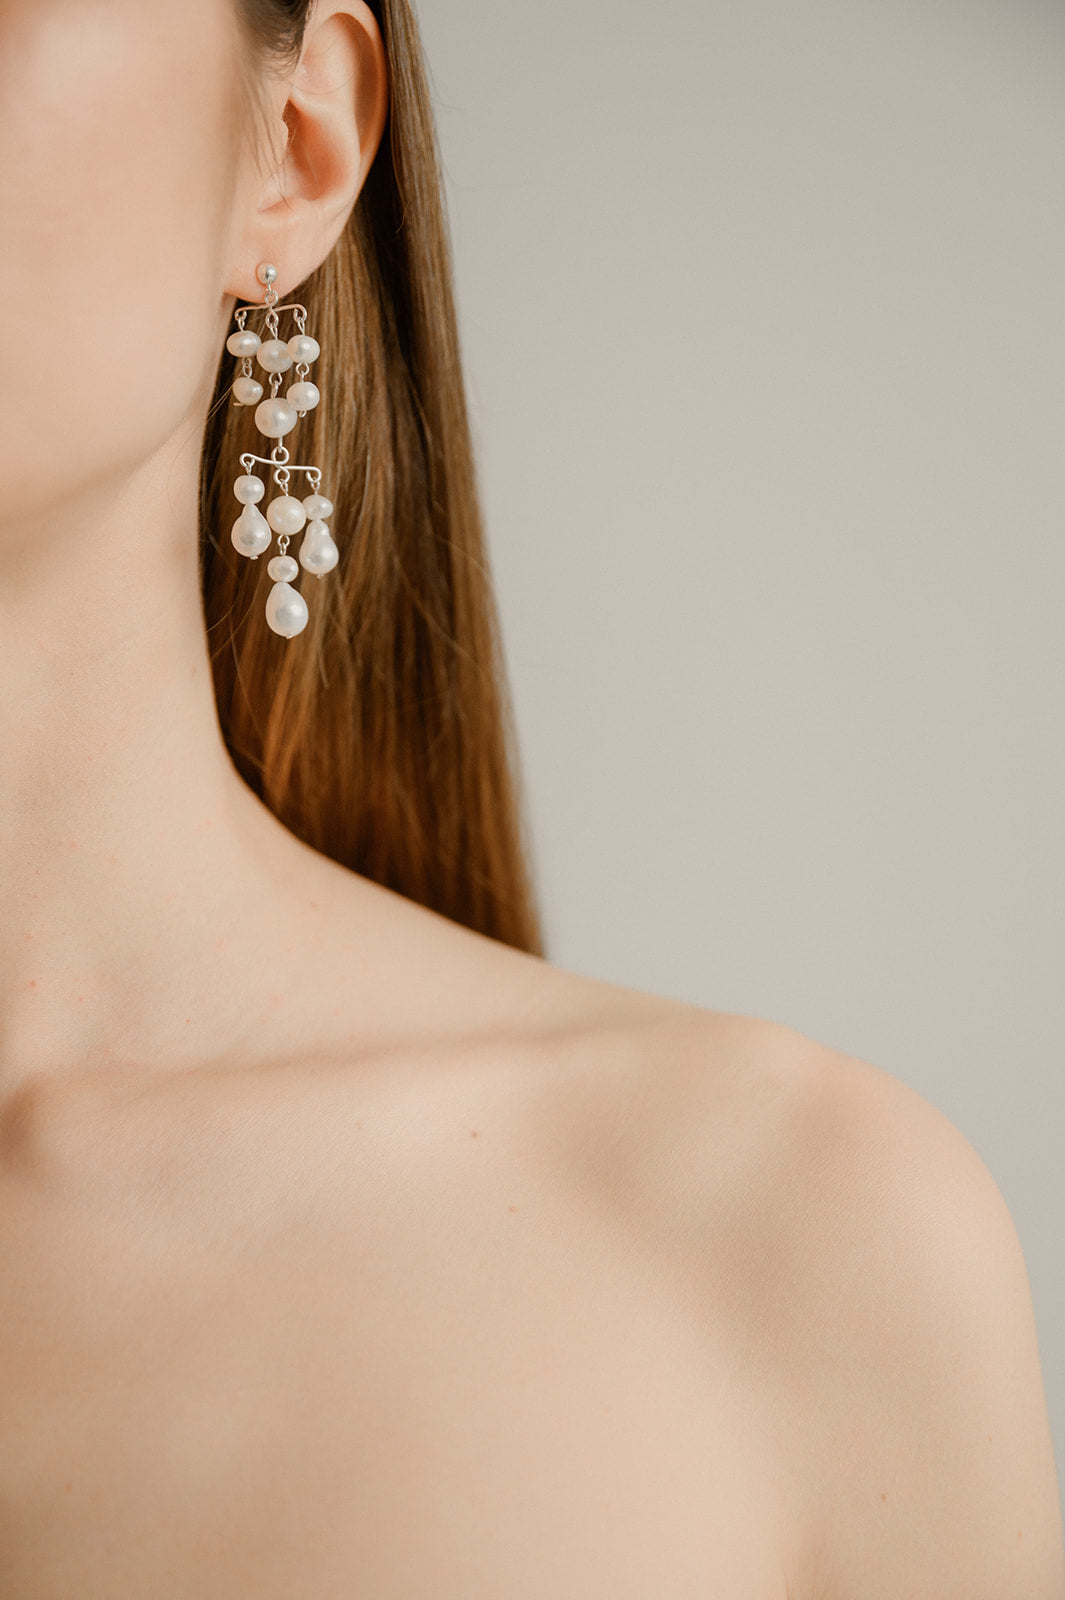 épaule d'une femme portant des boucles d'oreilles en perles naturelles et les cheveux dans son dos détachés 